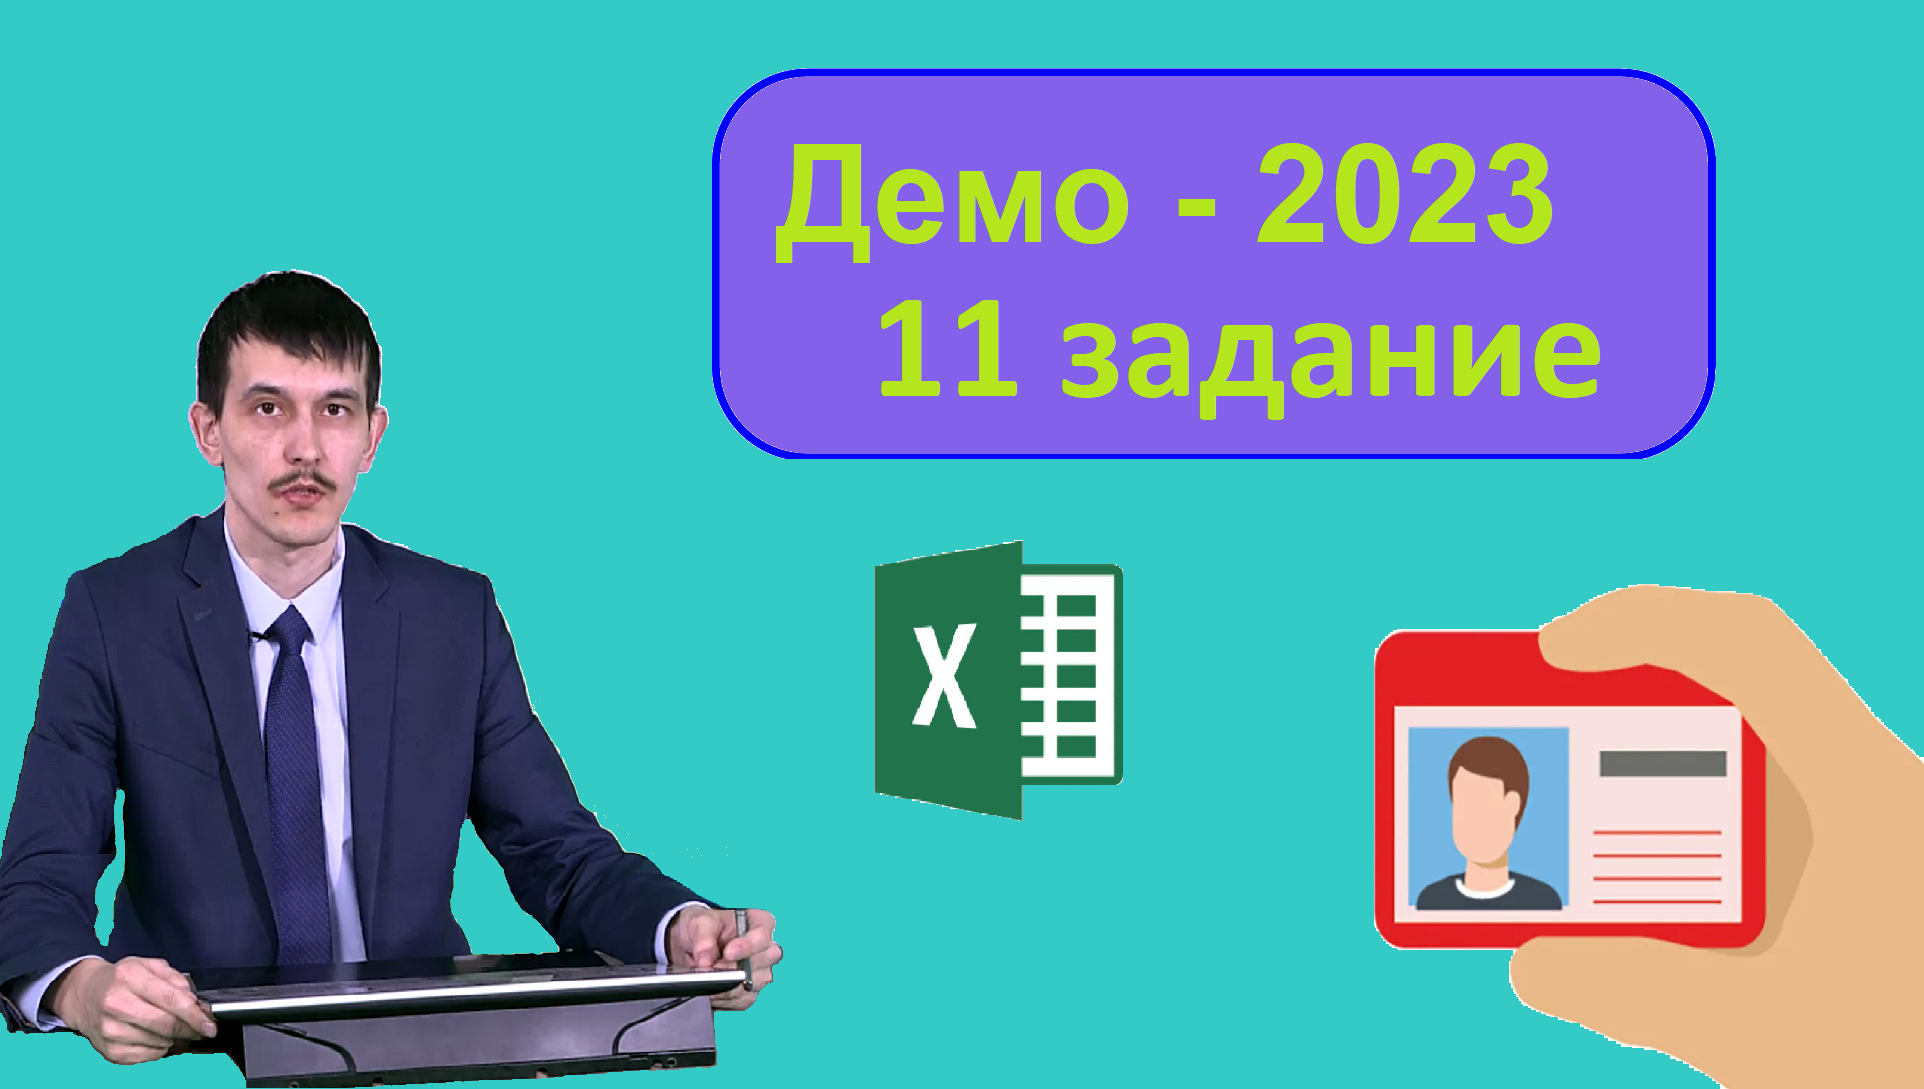 Информатика демо 2023. Демо 2023. ЕГЭ Информатика 2023 базы данных. Информатика синфи 11.